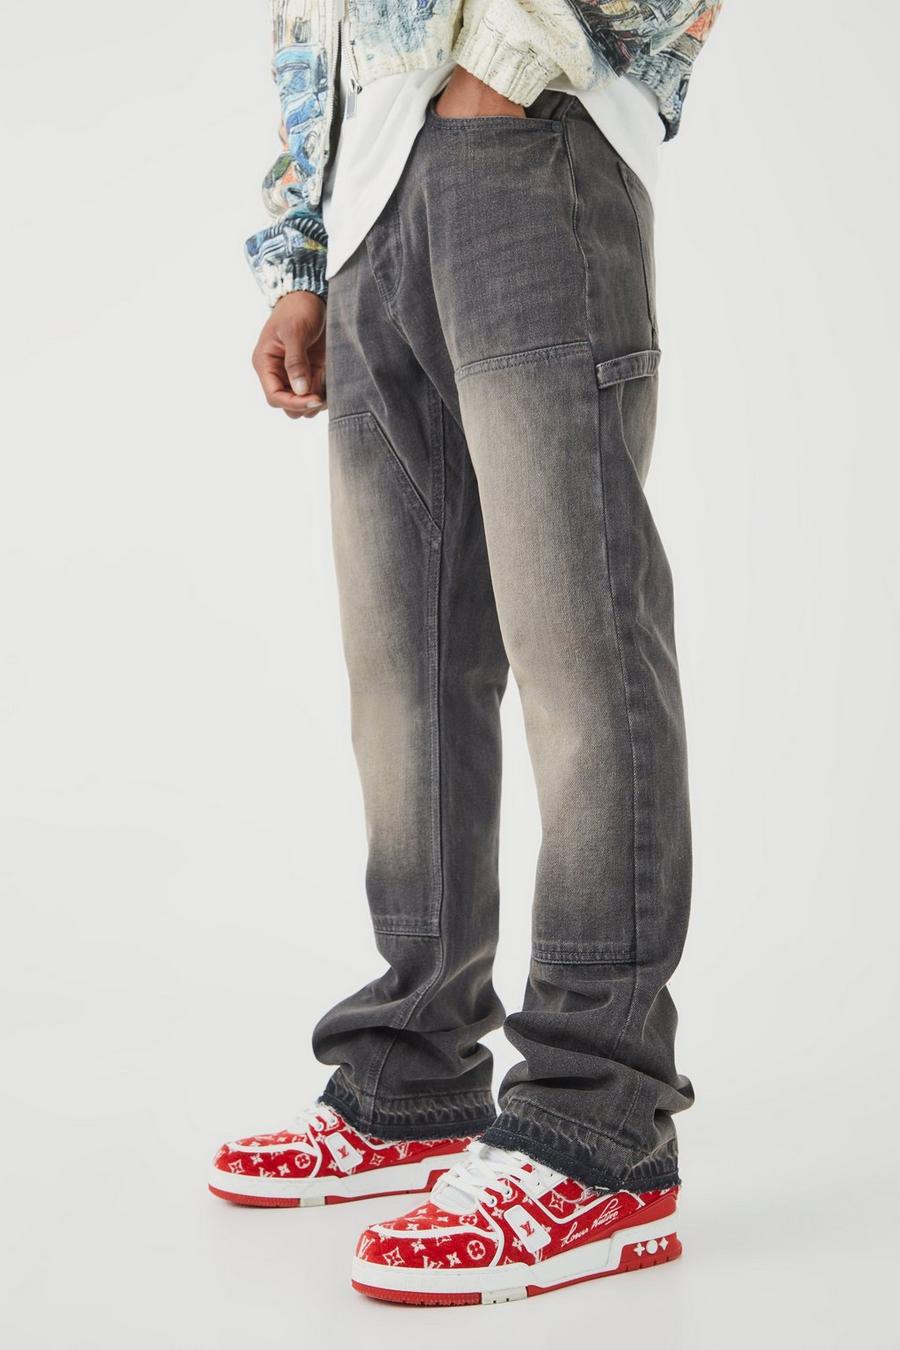 Jeans a zampa Slim Fit in denim rigido stile Carpenter, Grey